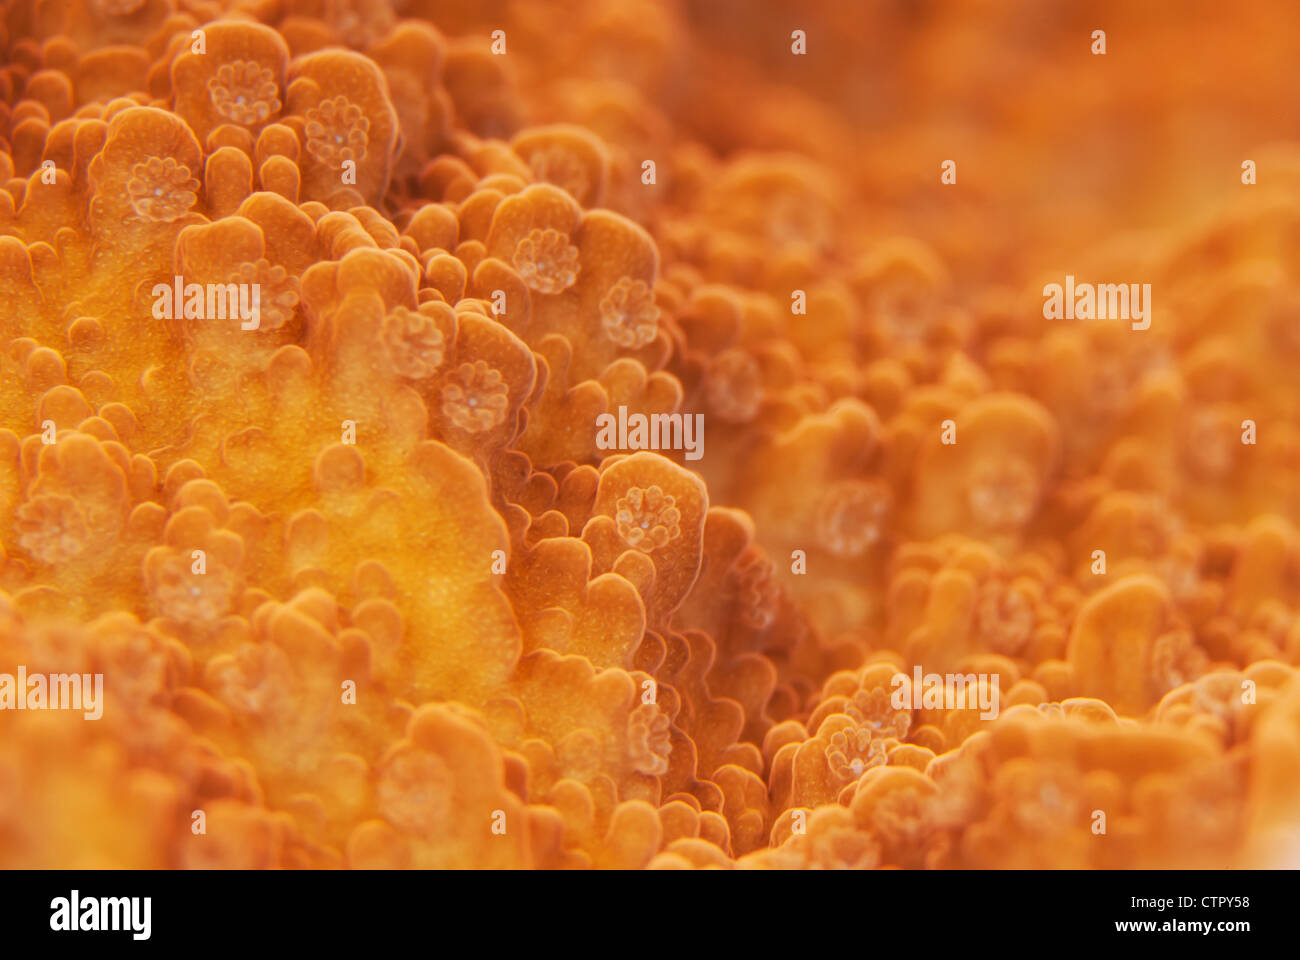 Questo è un primo piano immagine di coralli duri di polipi. Foto Stock